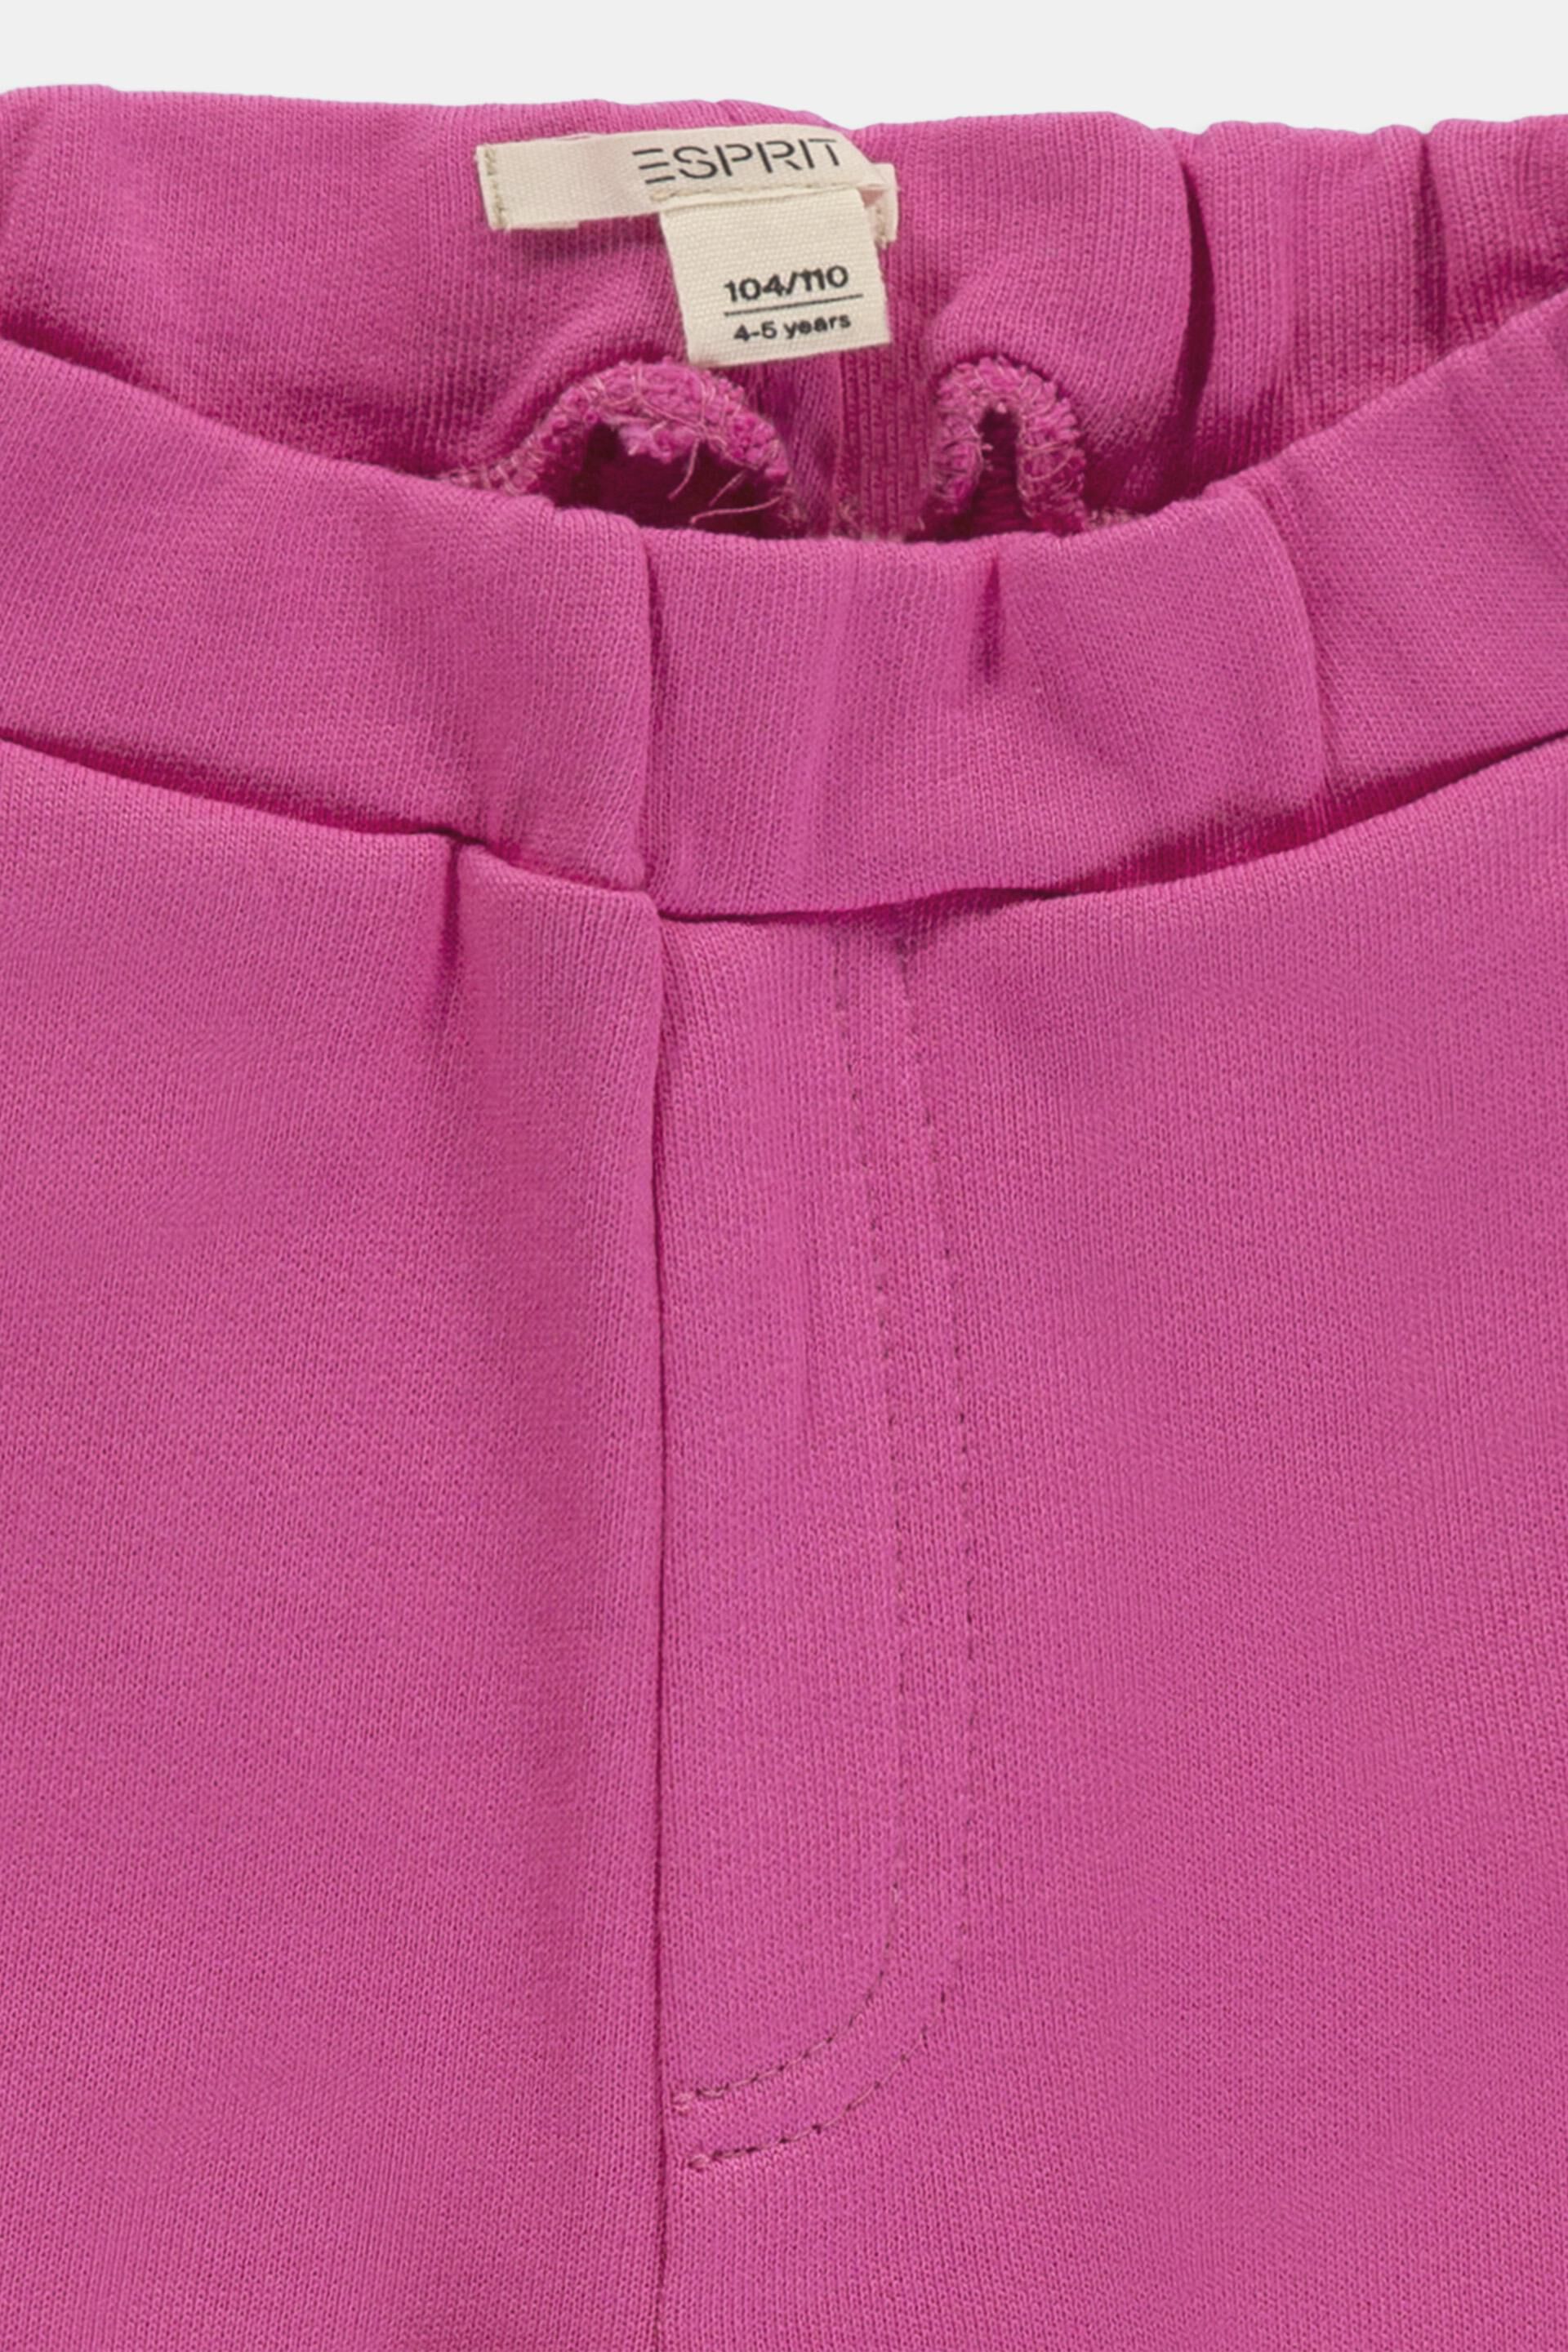 Esprit 100 aus % Basic-Sweatshirt Baumwolle